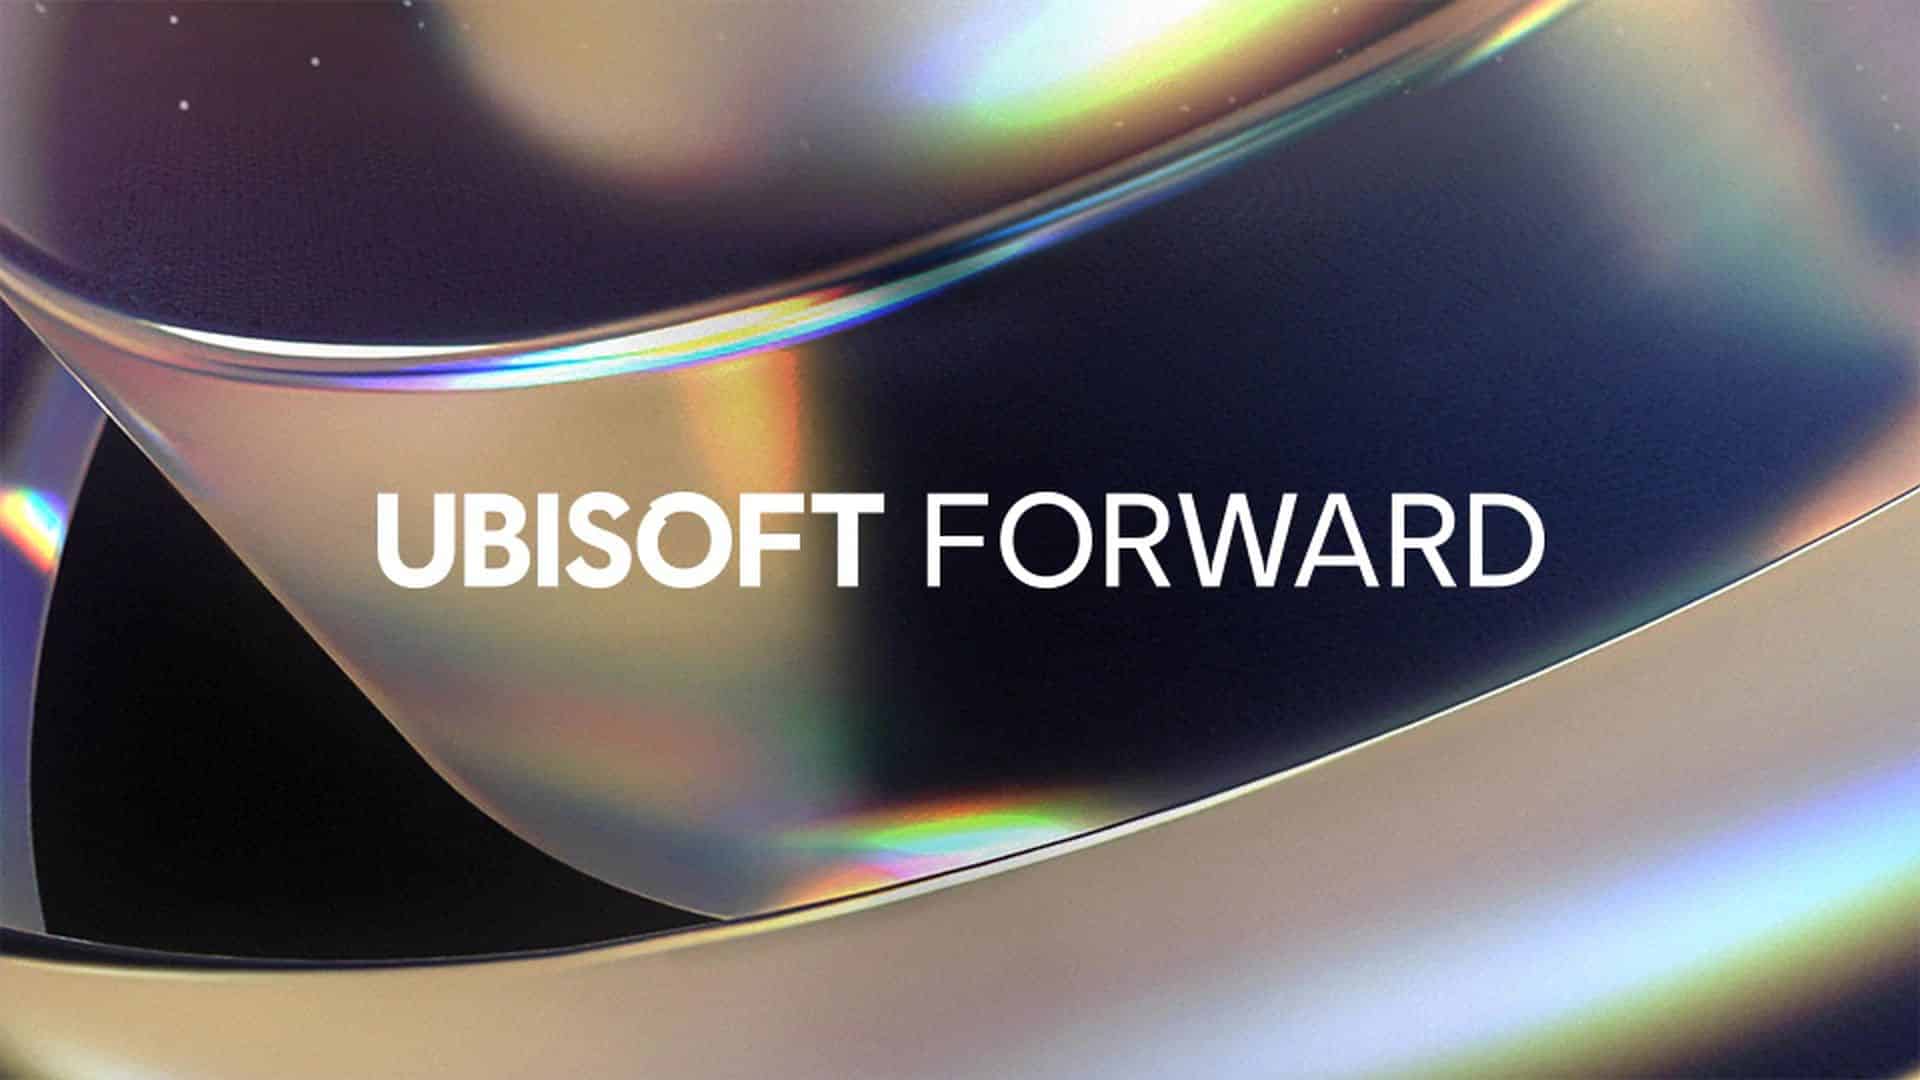 Ubisoft Forward announced for September 10